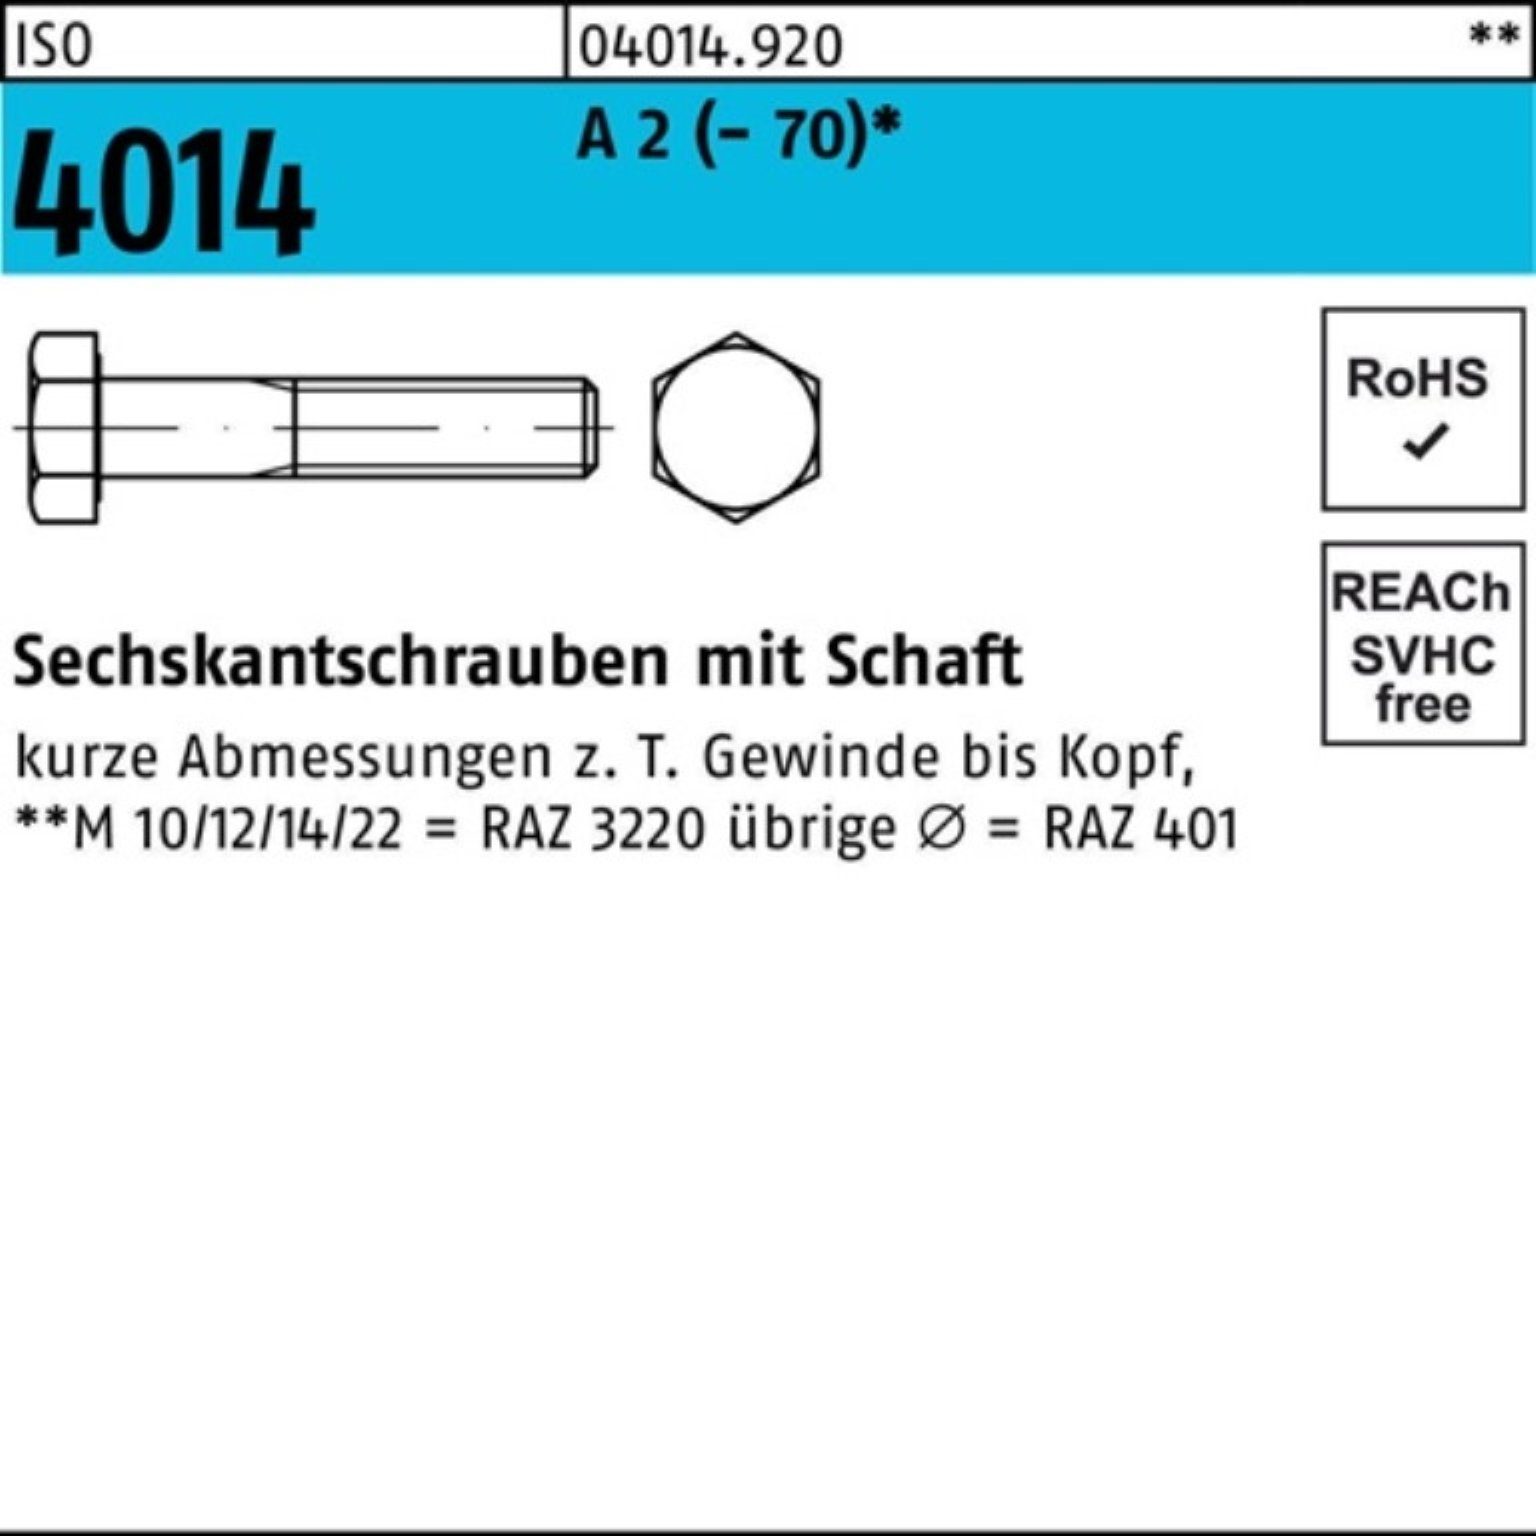 Pack Sechskantschraube 75 100er (70) M8x St Schaft Sechskantschraube 4014 2 ISO Bufab A 100